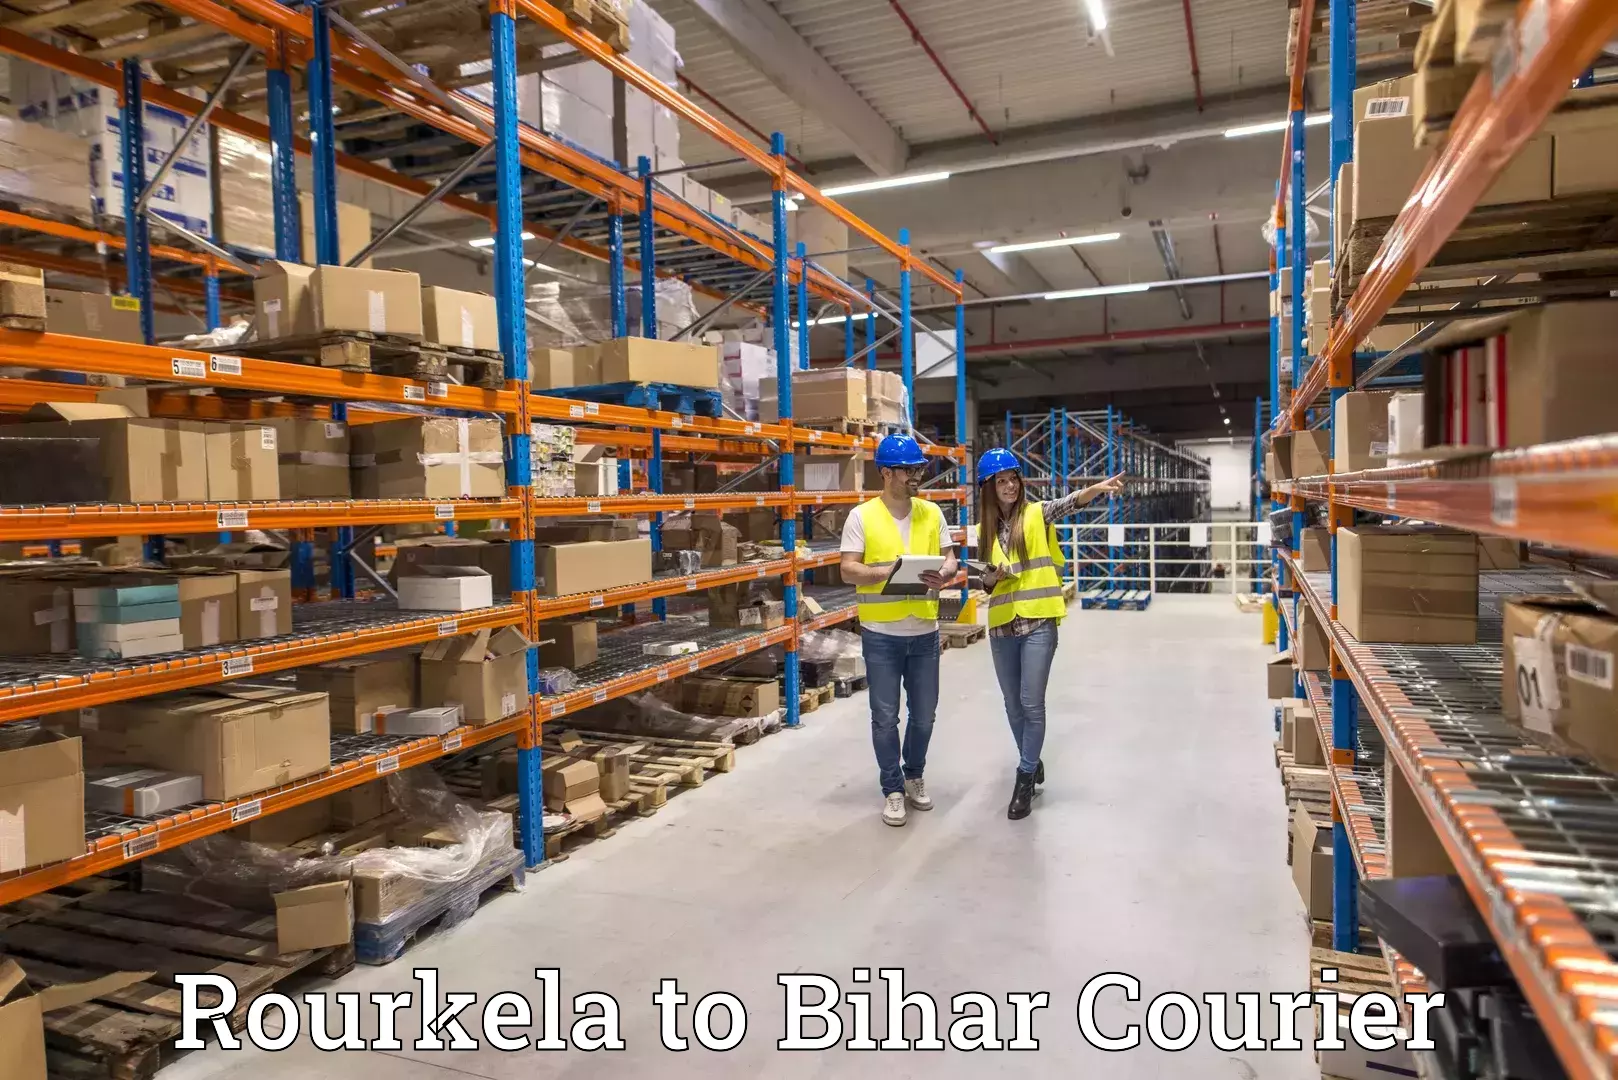 24-hour courier service Rourkela to Dinara